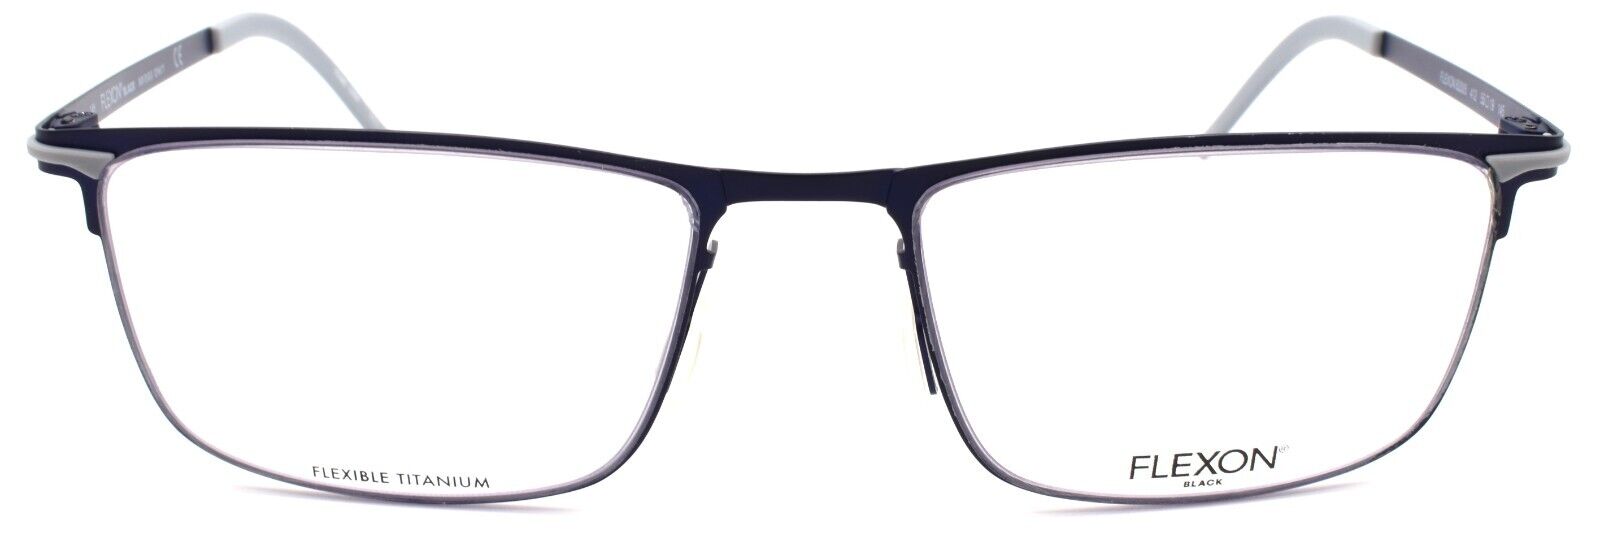 2-Flexon B2005 412 Men's Eyeglasses Frames Navy 55-19-145 Flexible Titanium-883900204545-IKSpecs